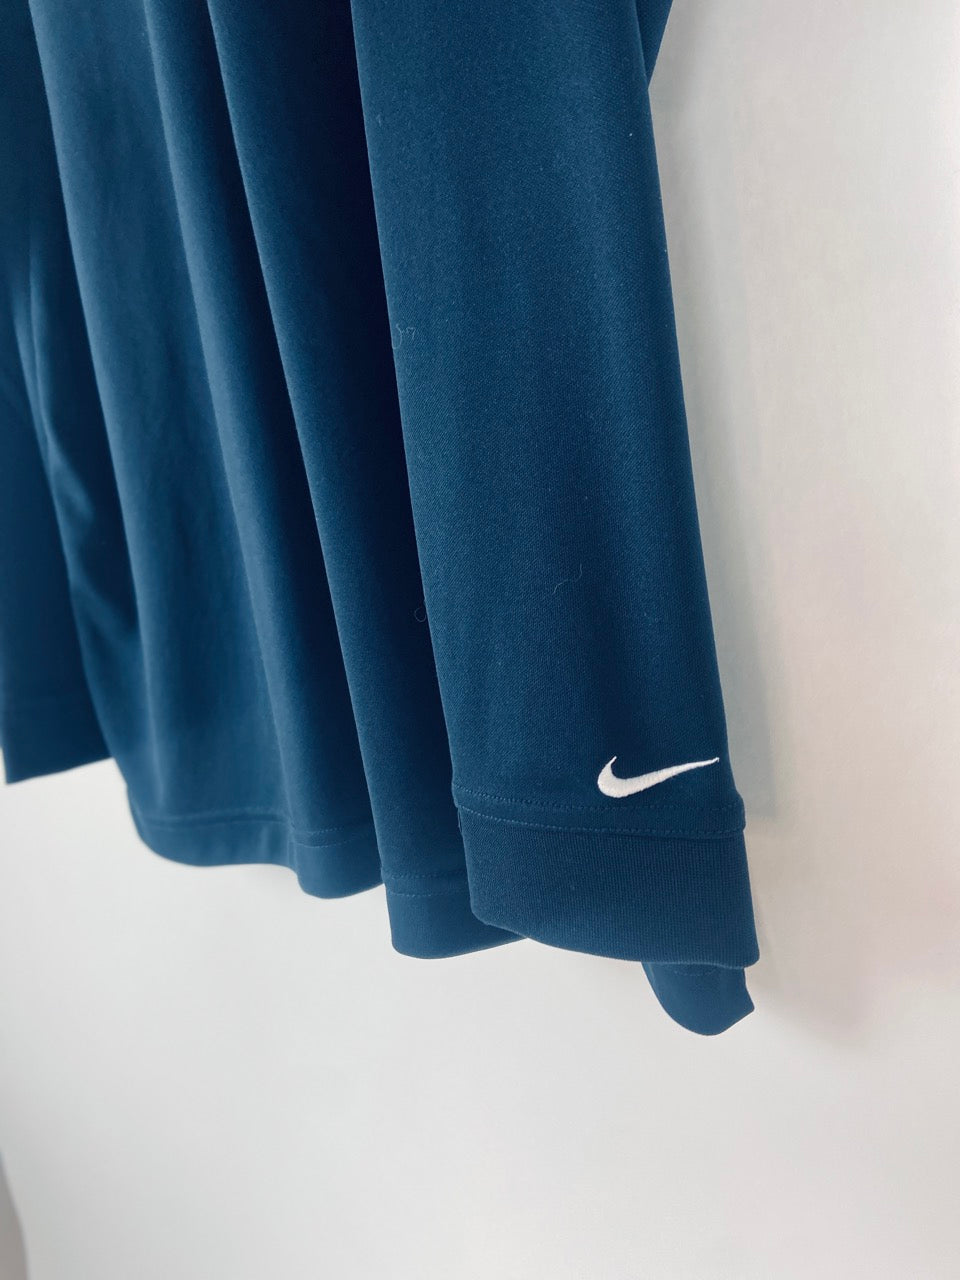 Navy Blue Nike Golf DriFit Long Sleeve- XL